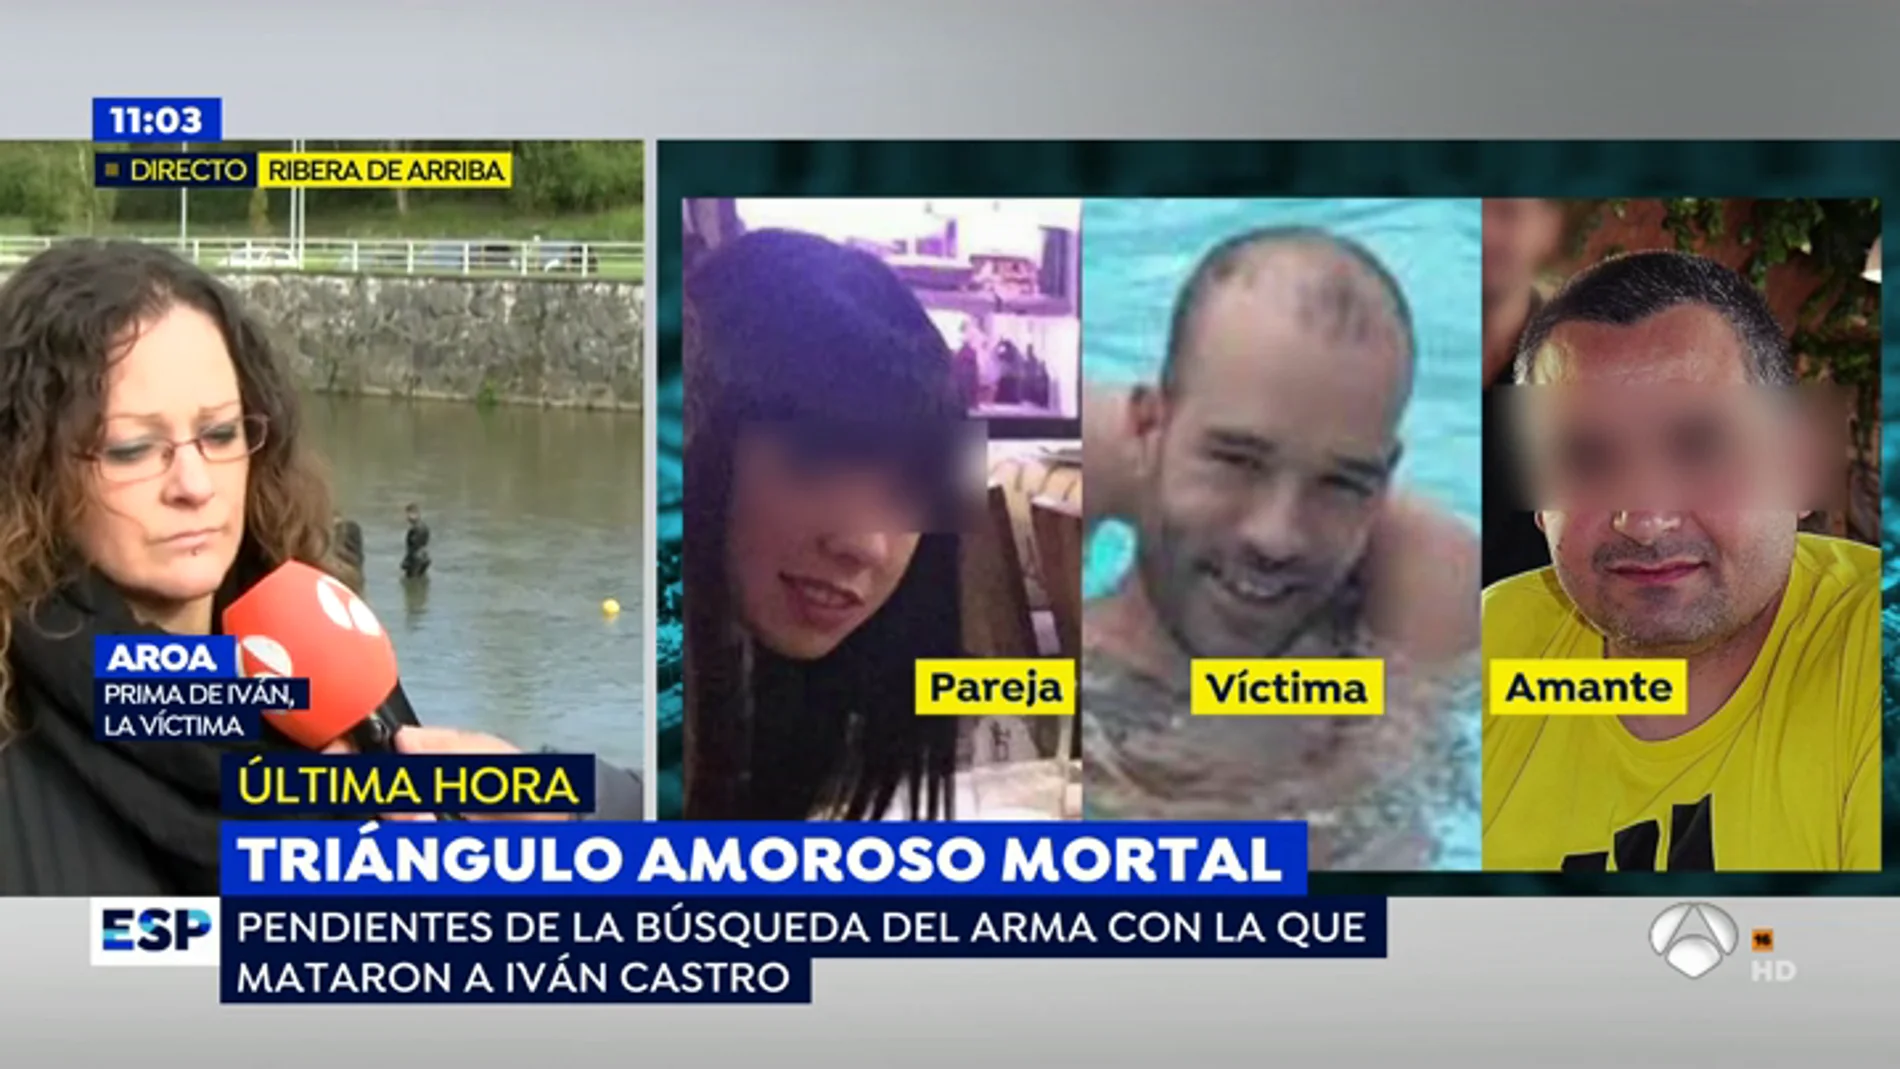 Aroa, familiar de Iván Castro, asesinado por el amante de su novia: "Iván no va a volver, lo único que nos queda es que se haga justicia"